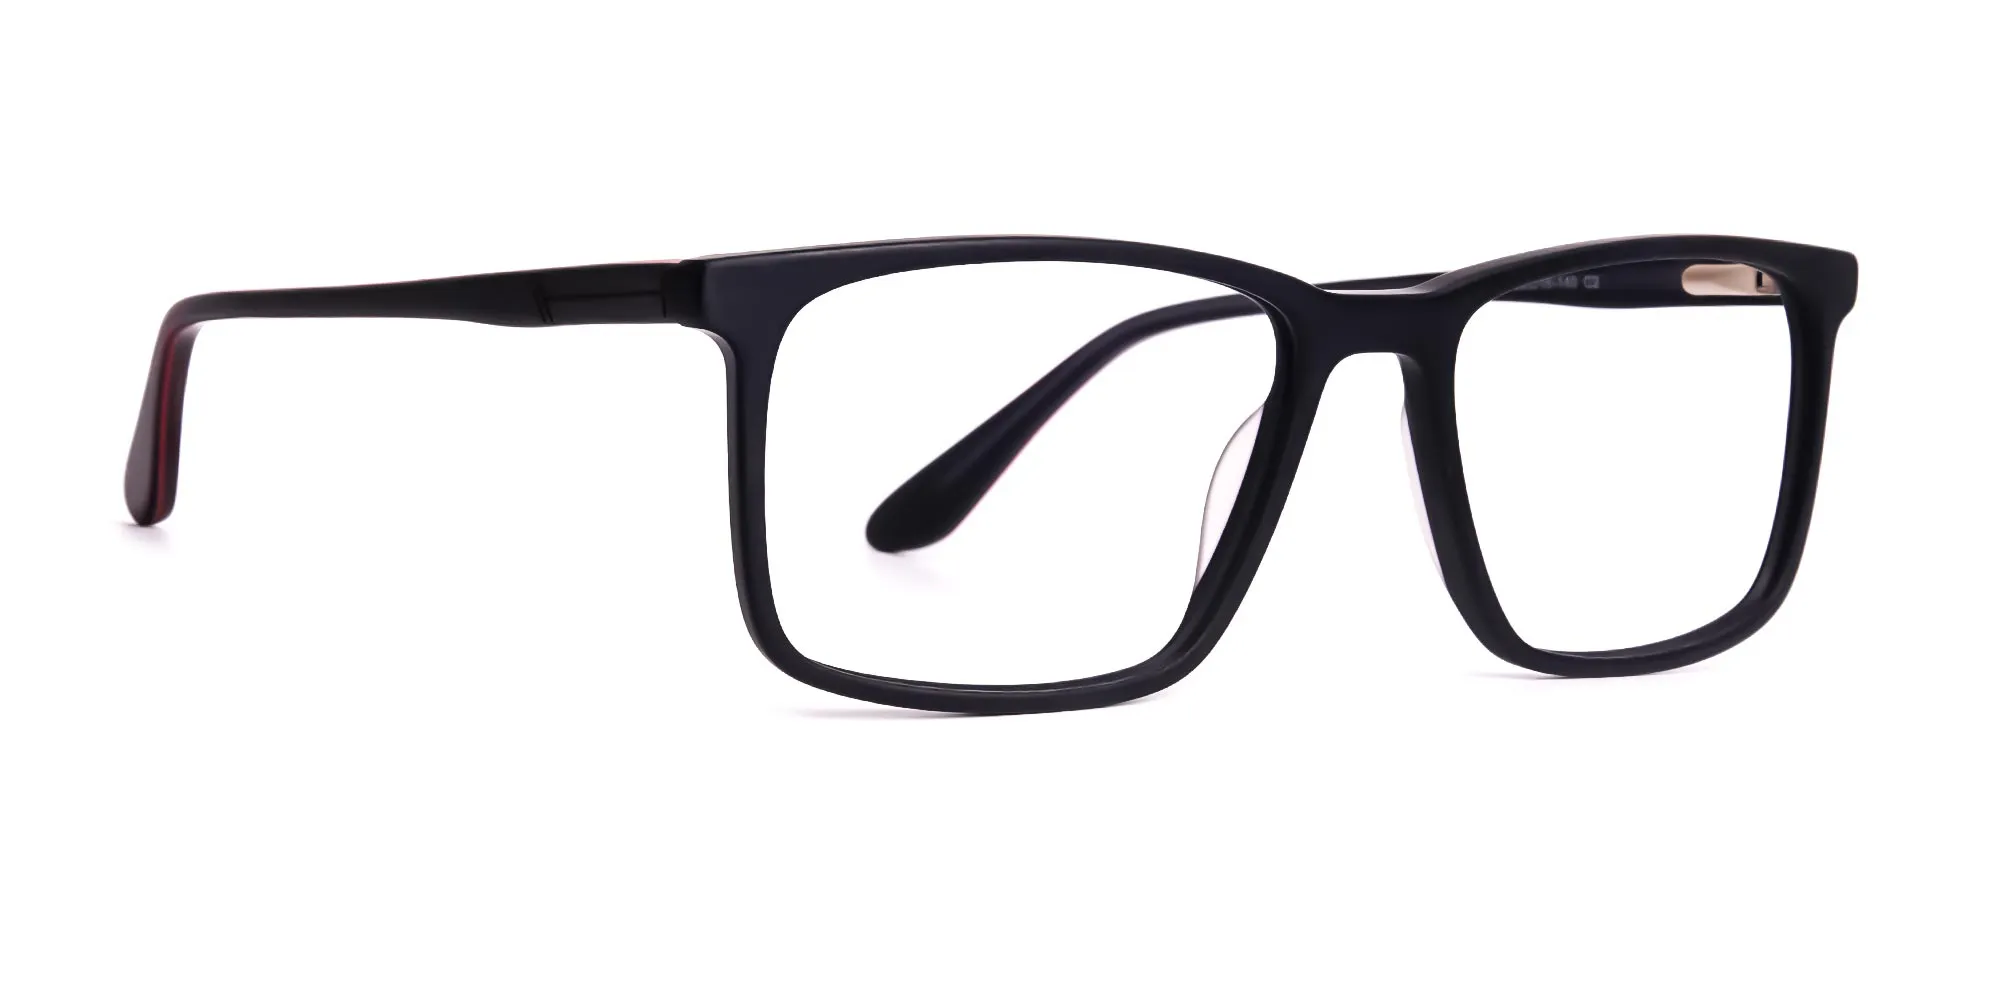 classic matte black full rim rectangular glasses frames-2